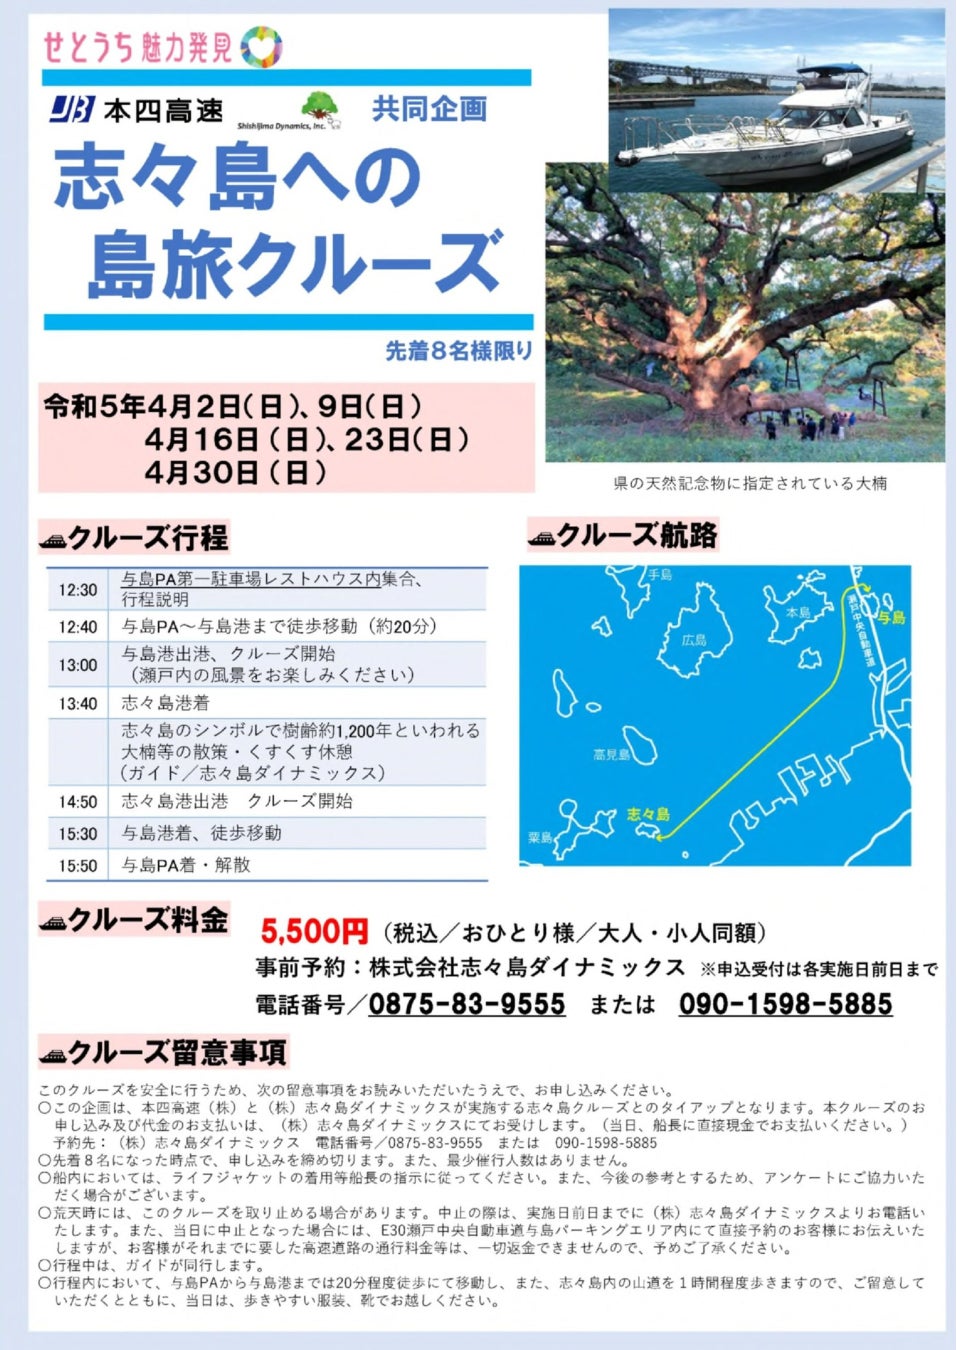 淡路島うずしおクルーズ特別便「SUNSET CRUISE」　
4月～5月、6日間の限定開催